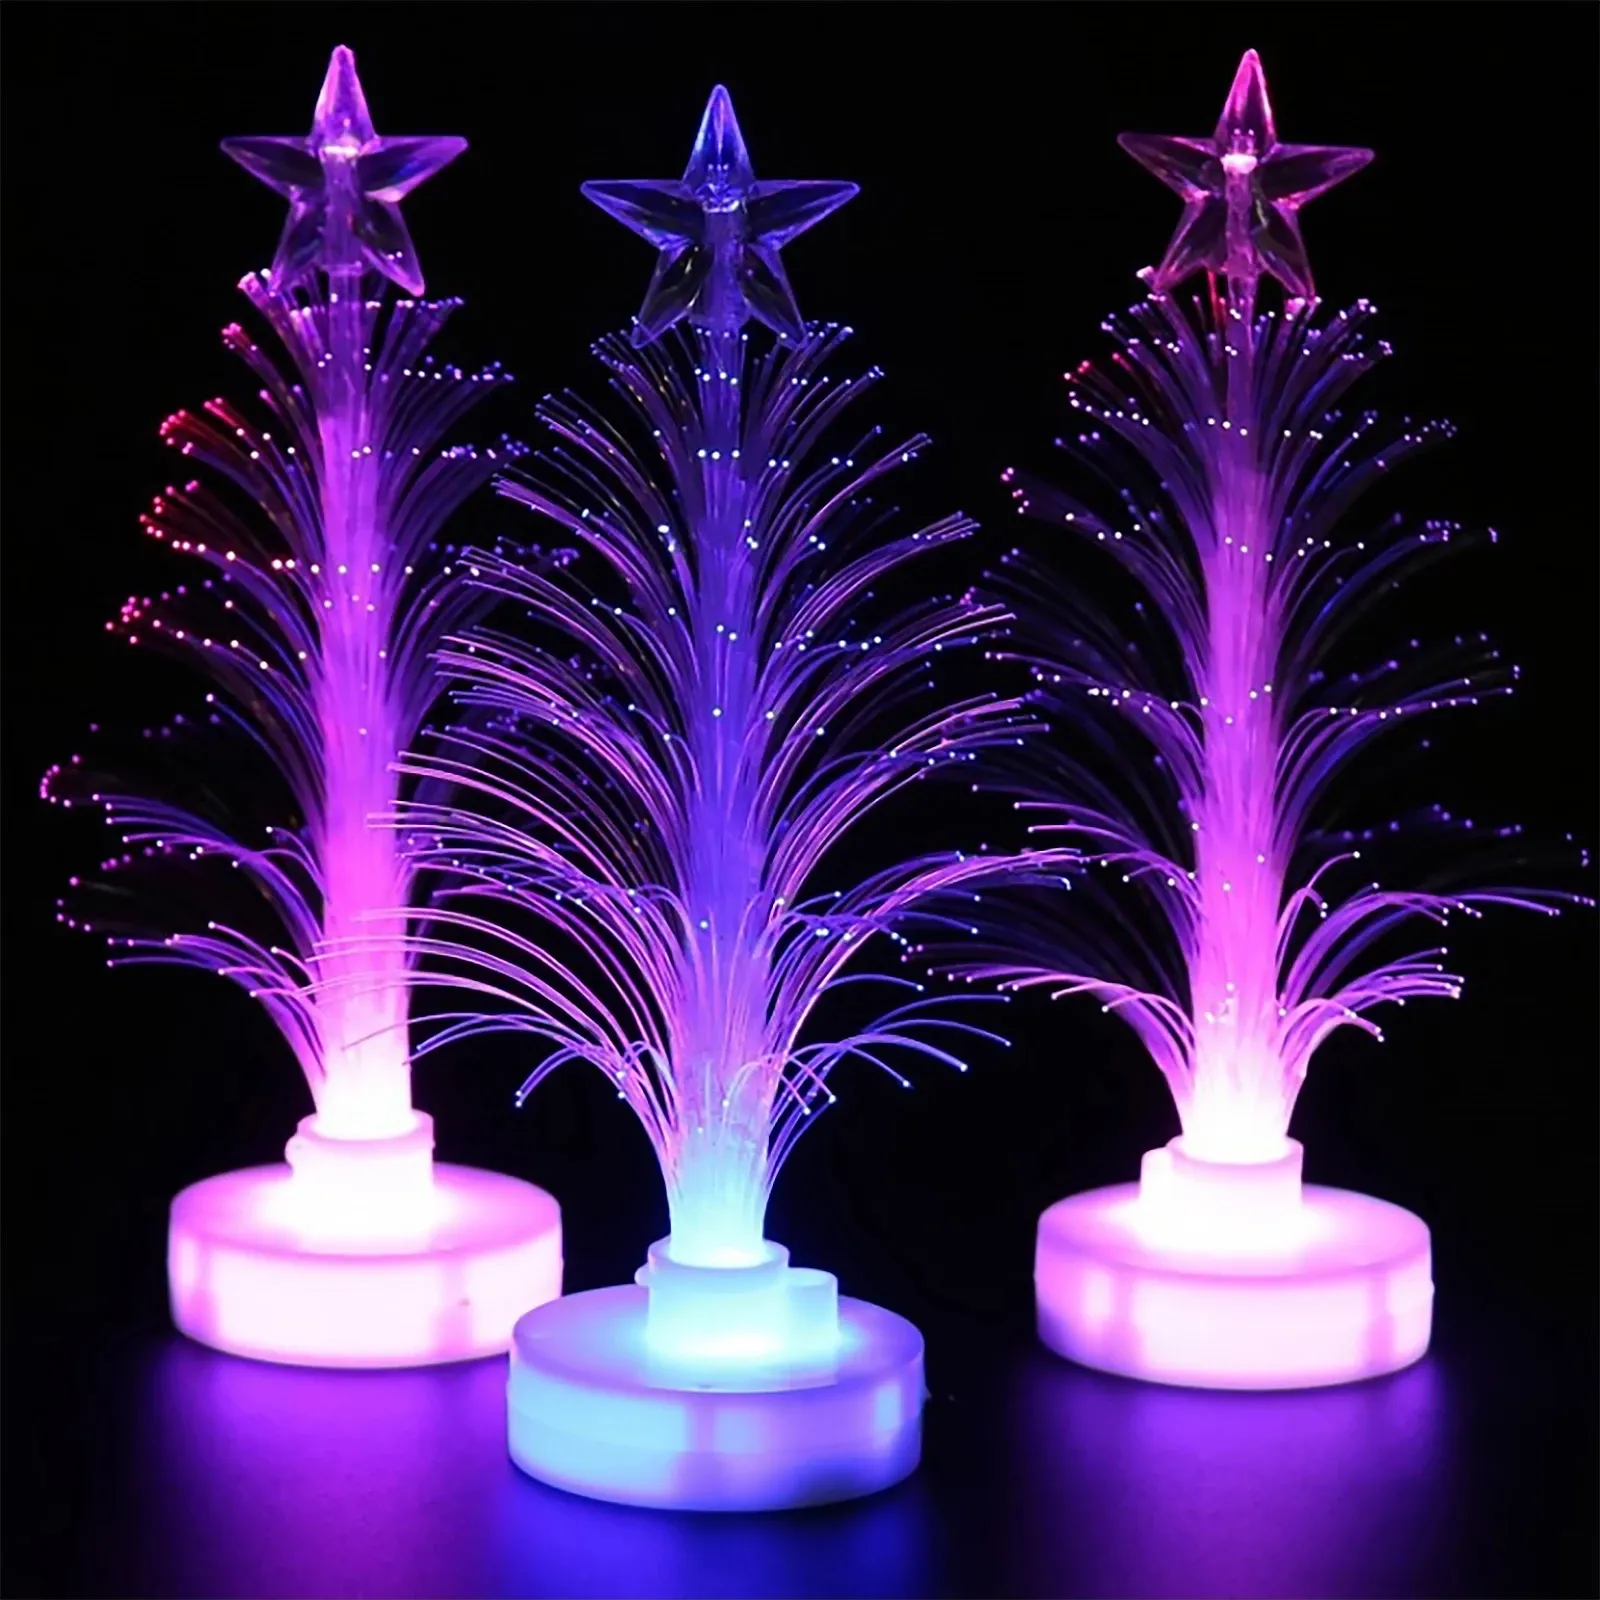 مصابيح إضاءة ليد لشجرة عيد الميلاد, مصابيح إضاءة ليد لشجرة عيد الميلاد مزودة بمنفذ USB ، إضاءة ليلية ملونة مزودة بمنفذ USB ، ويمكن تقديمها كهدية في الكريسماس